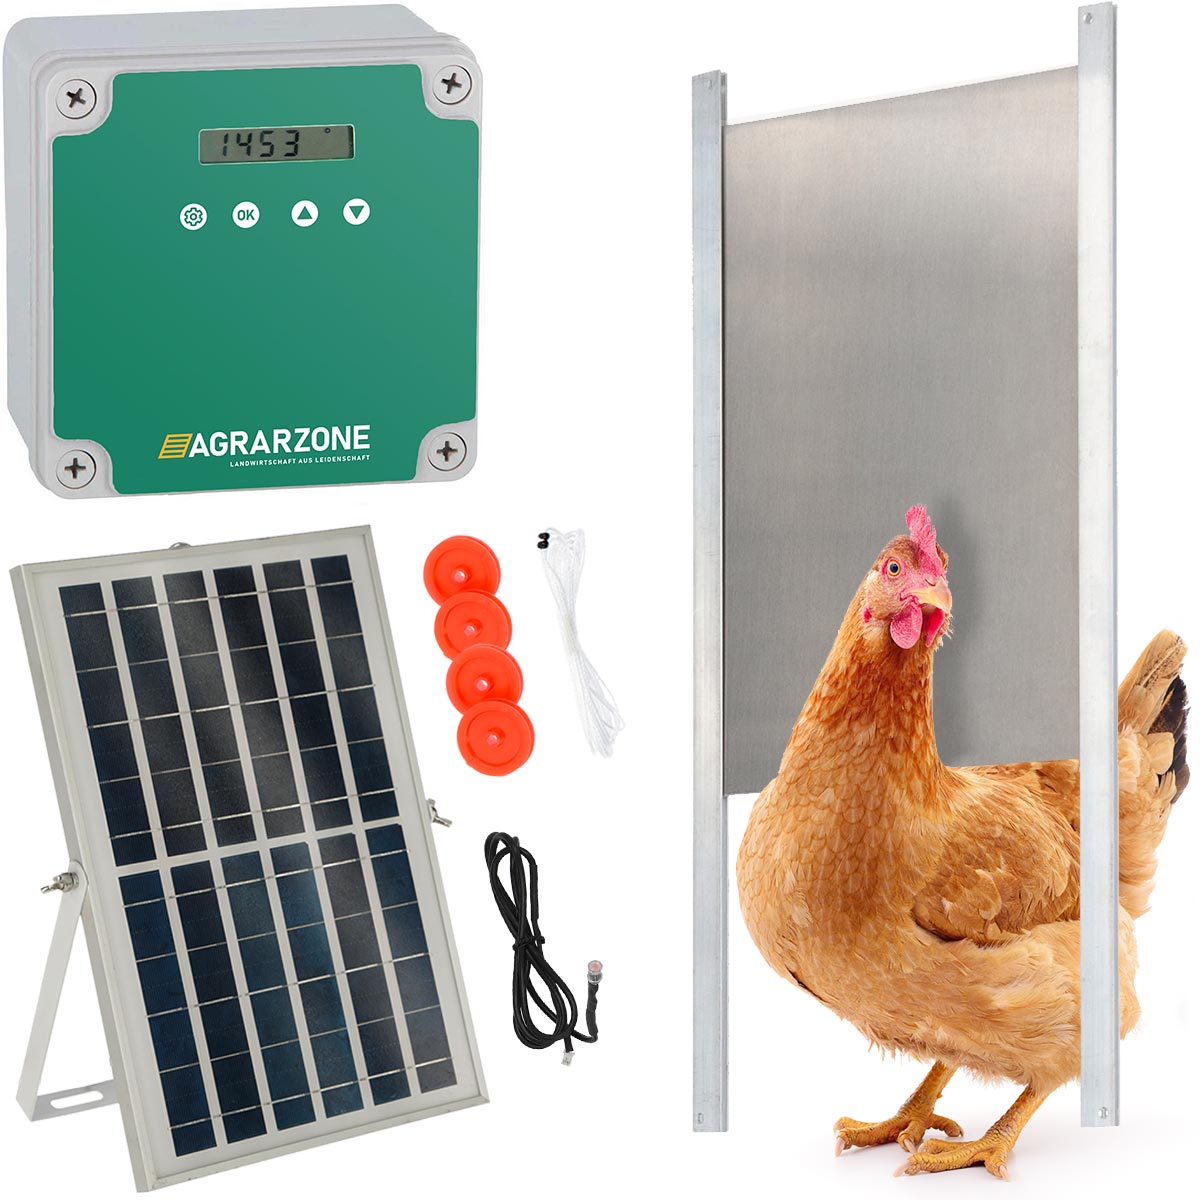 Agrarzone Porta automatica per pollaio fotovoltaica 30 x 40 cm